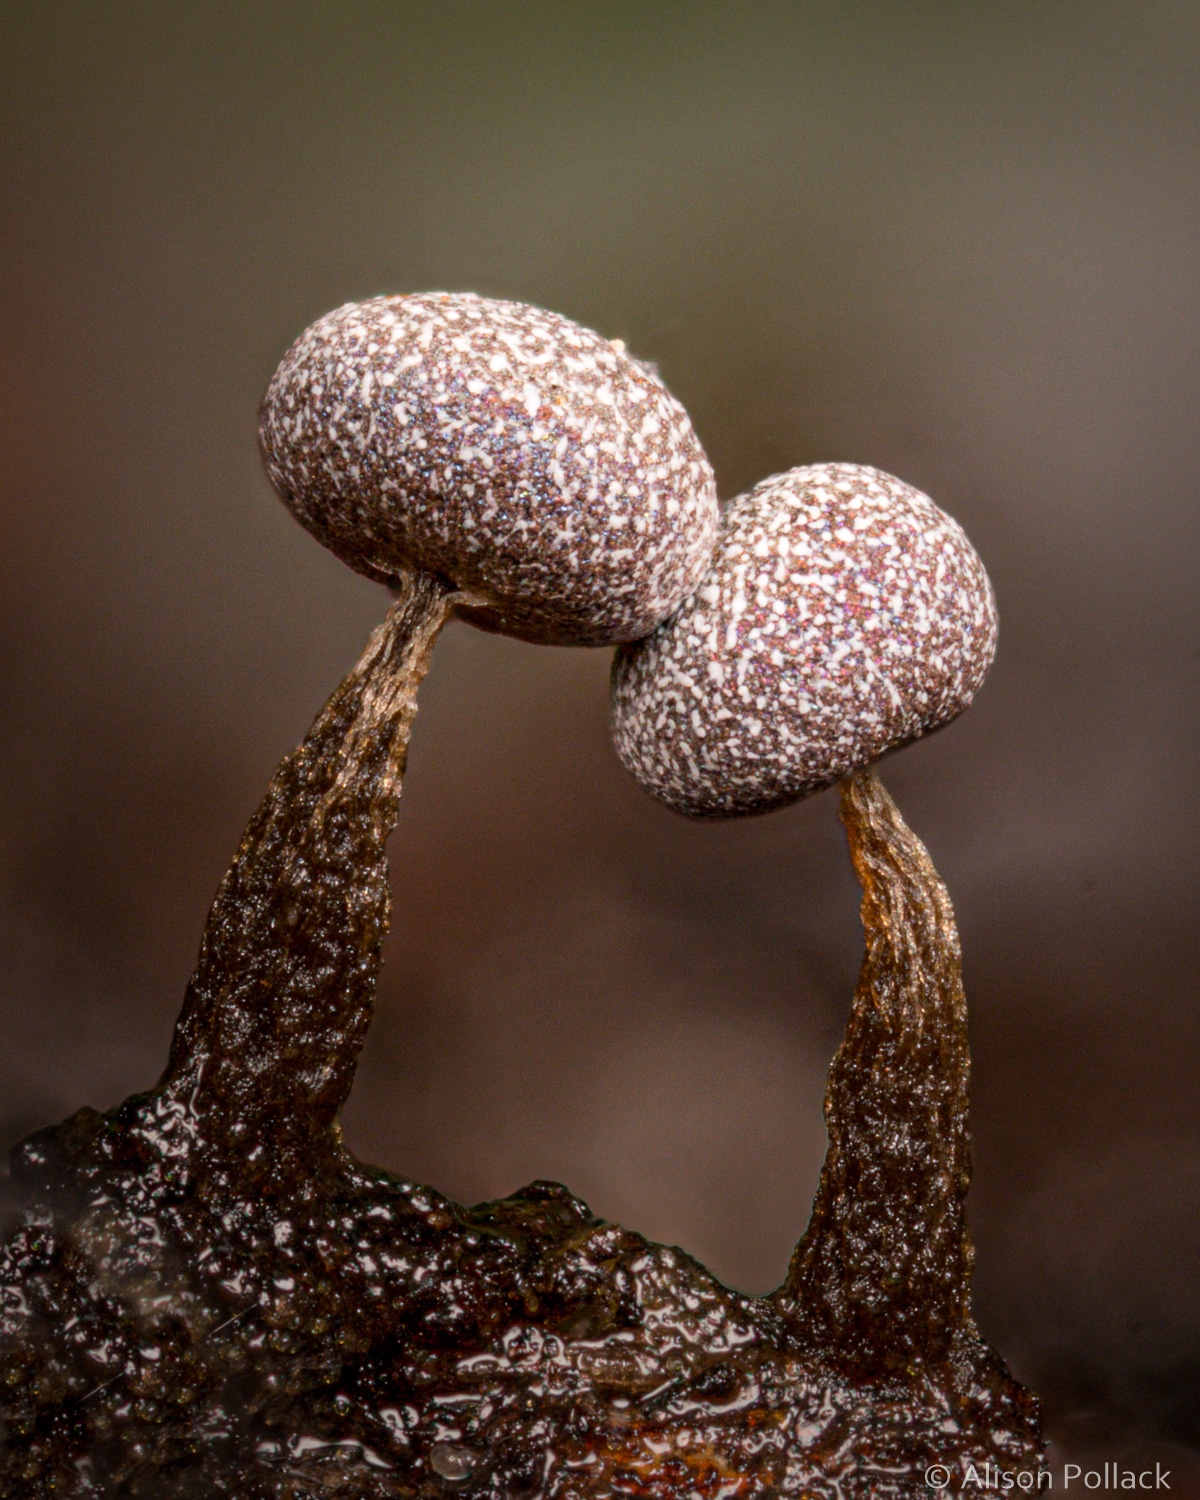 Close Up Photos of Mushrooms